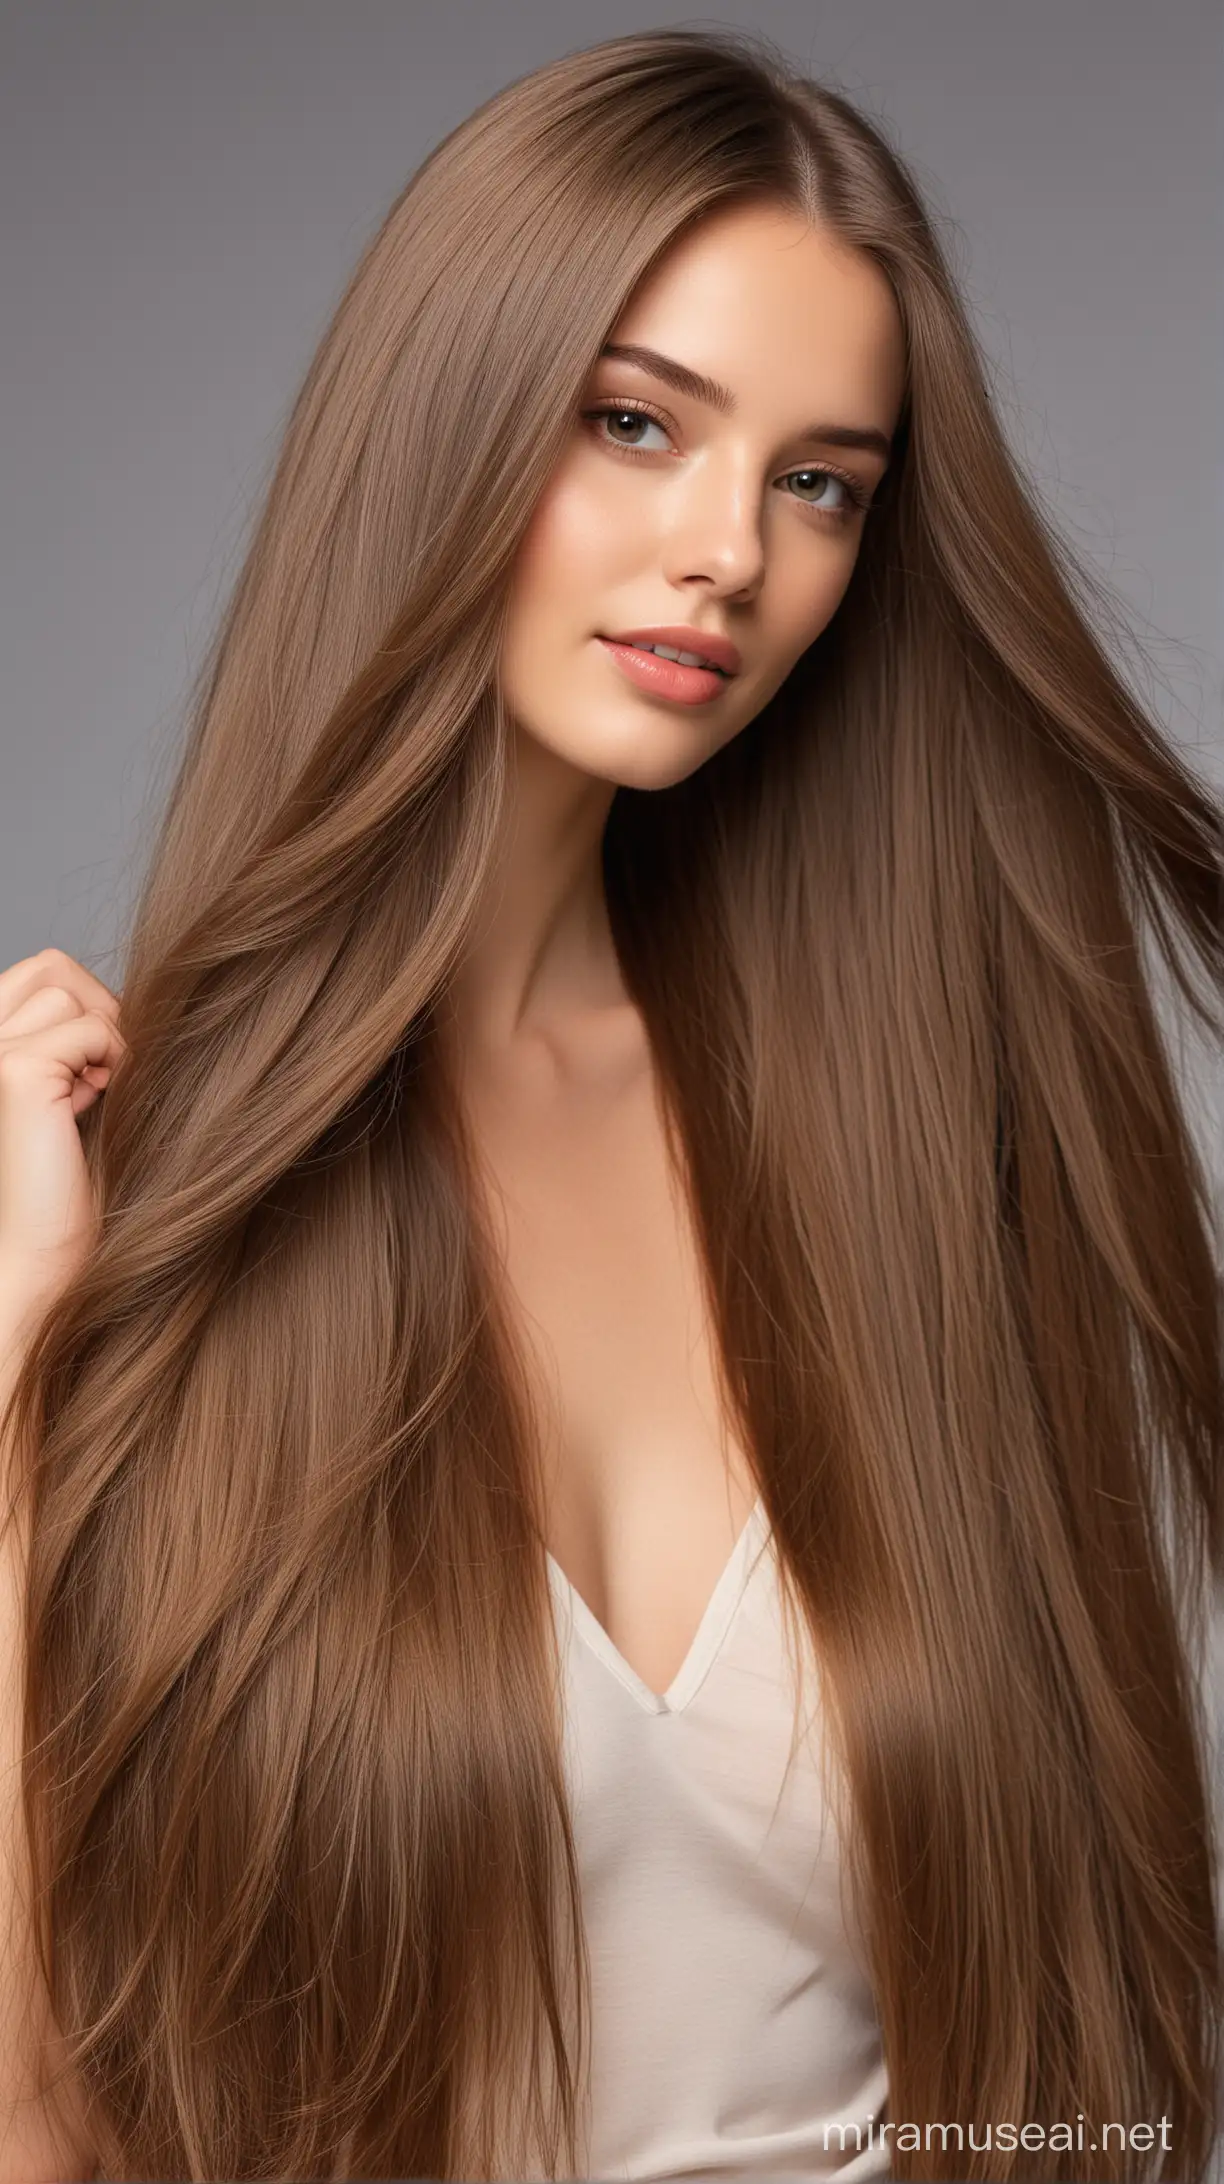 Elegant Model with Flowing Long Hair